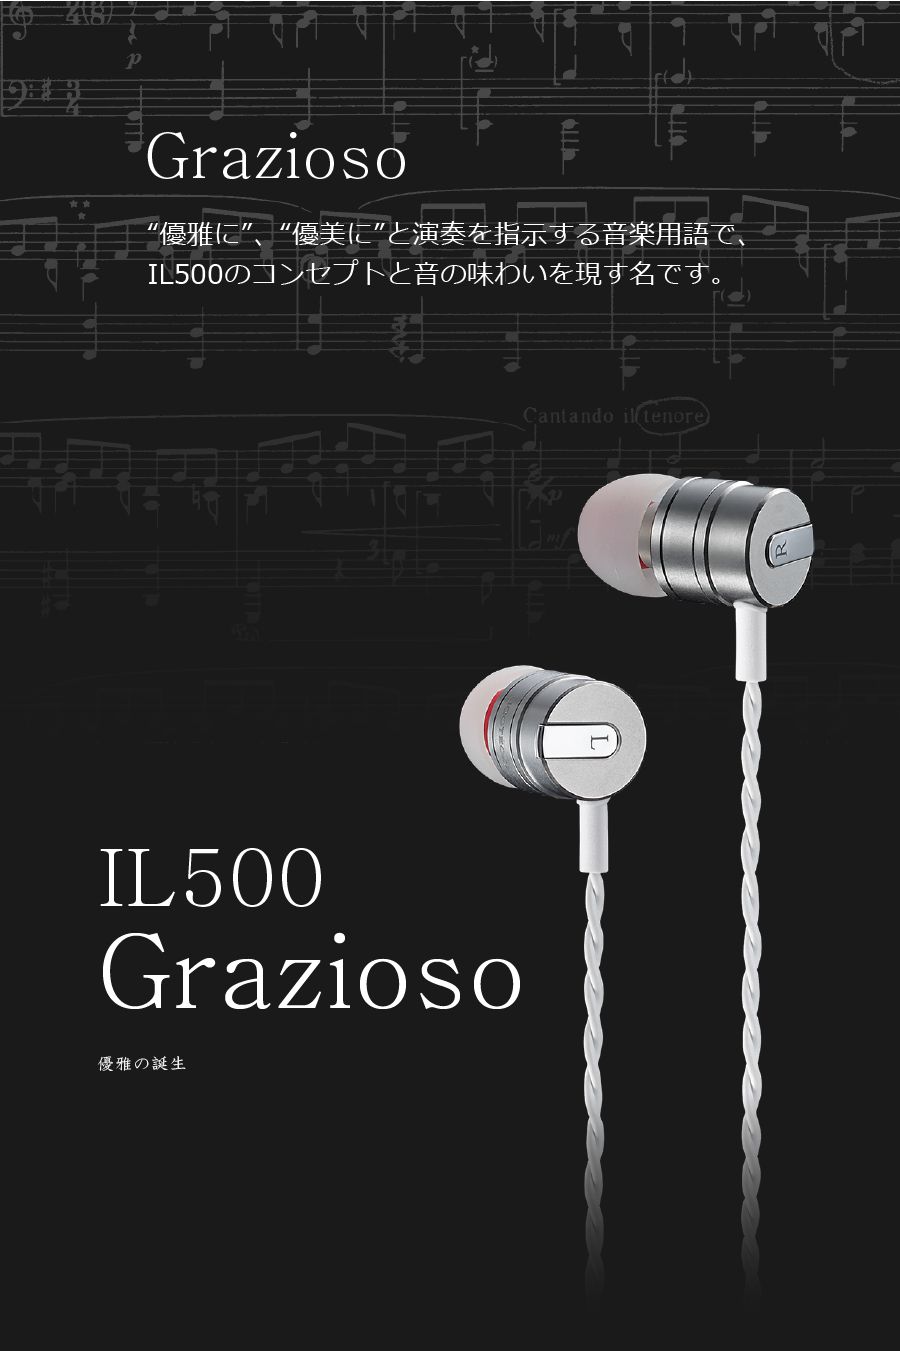 カナル型チタンイヤフォン UCOTECH IL500grazioso |